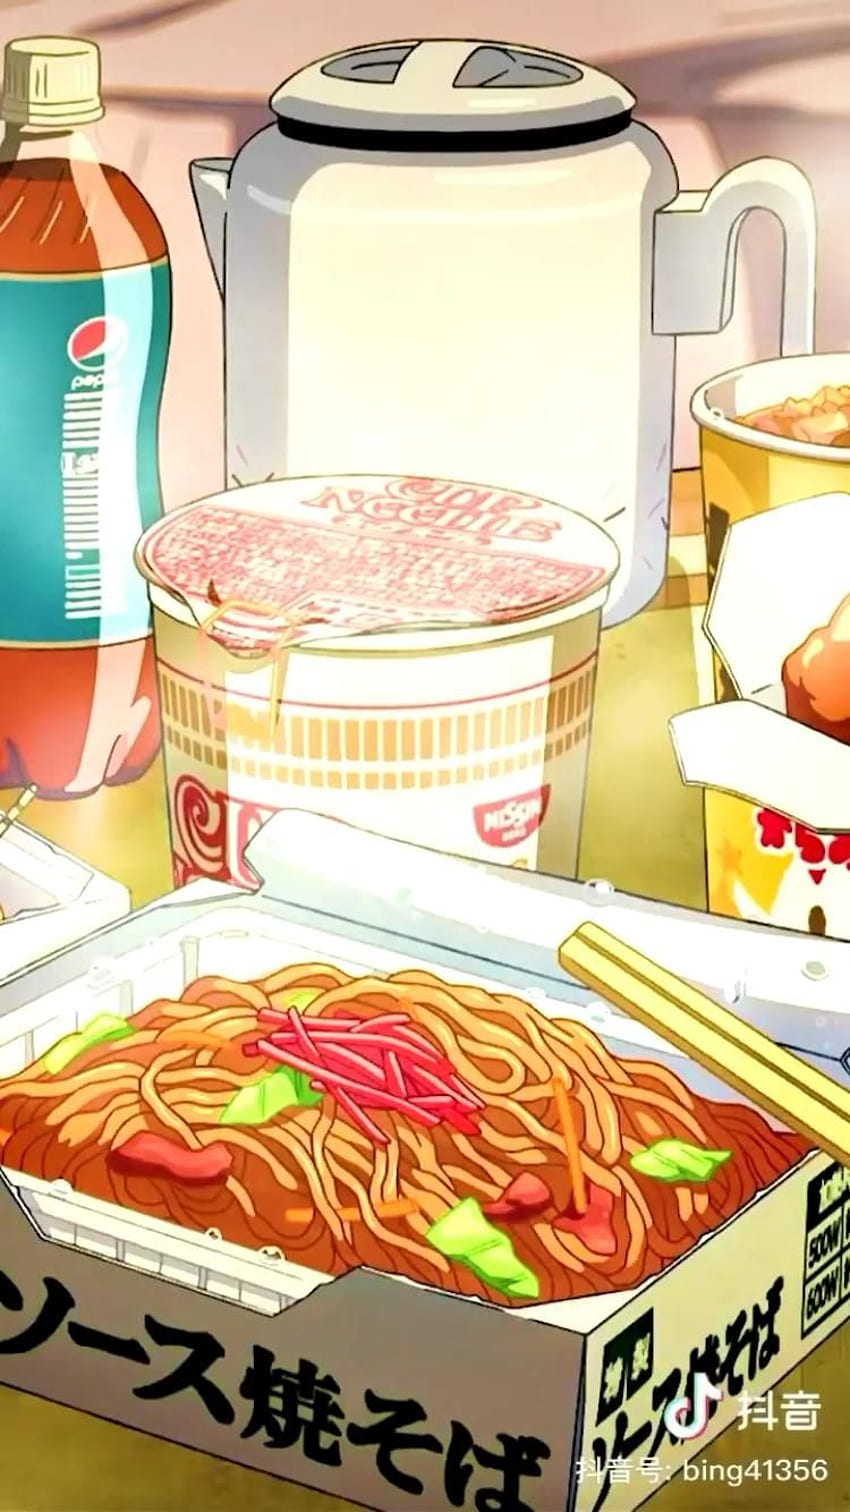 Anime Food Aesthetic on Twitter Looks yummy   httpstcoYaCGyVb8Ci  X